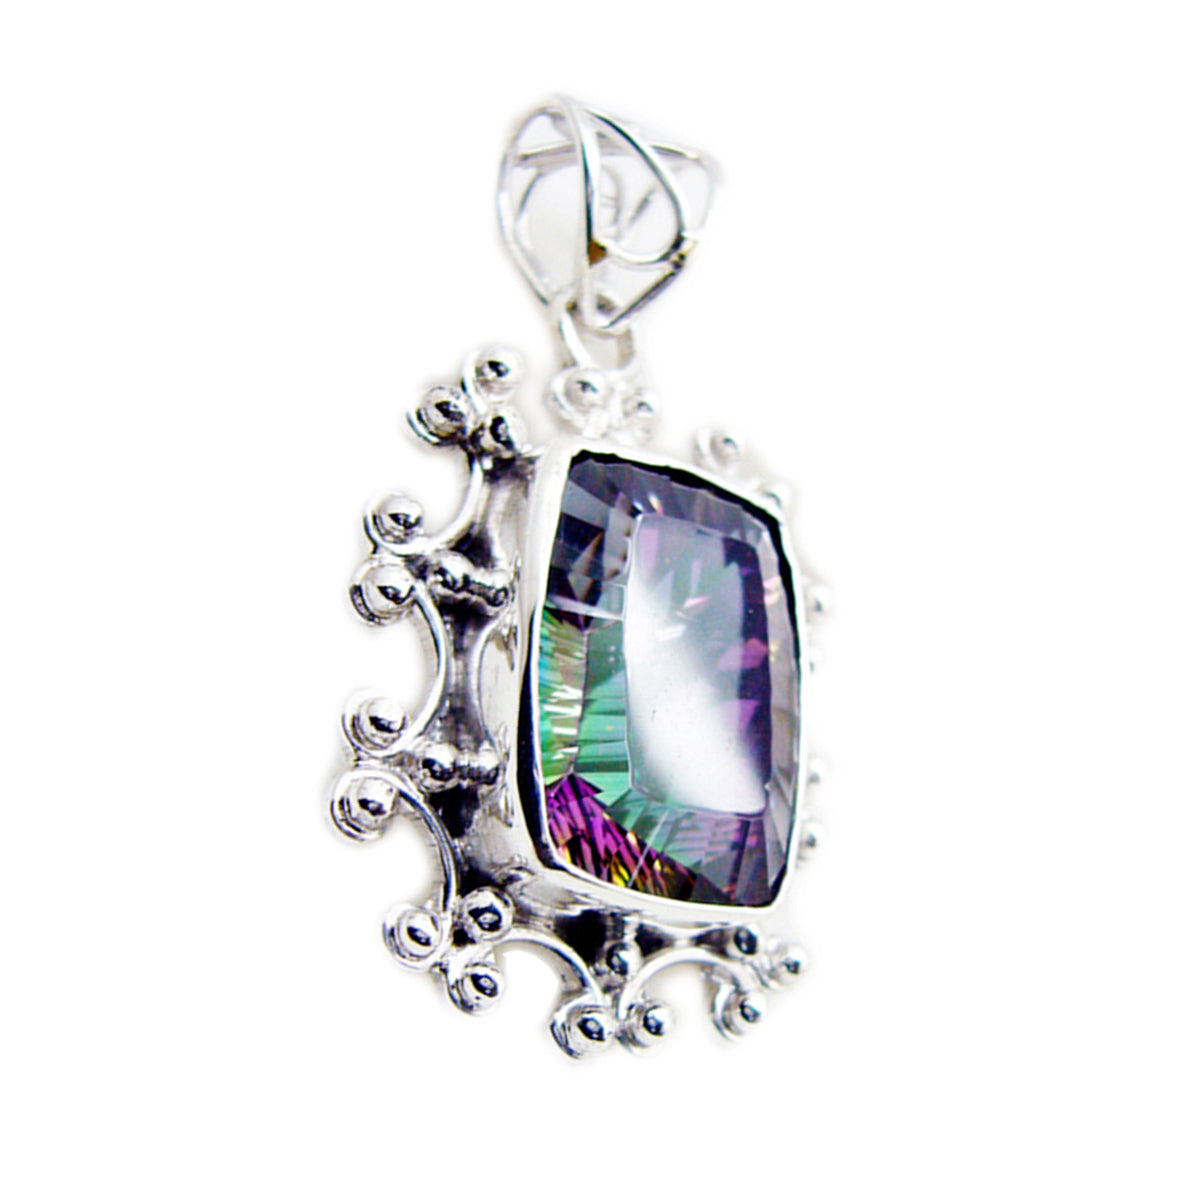 Riyo encantadora piedra preciosa octágono facetado multicolor cuarzo místico colgante de plata de ley regalo para mujer